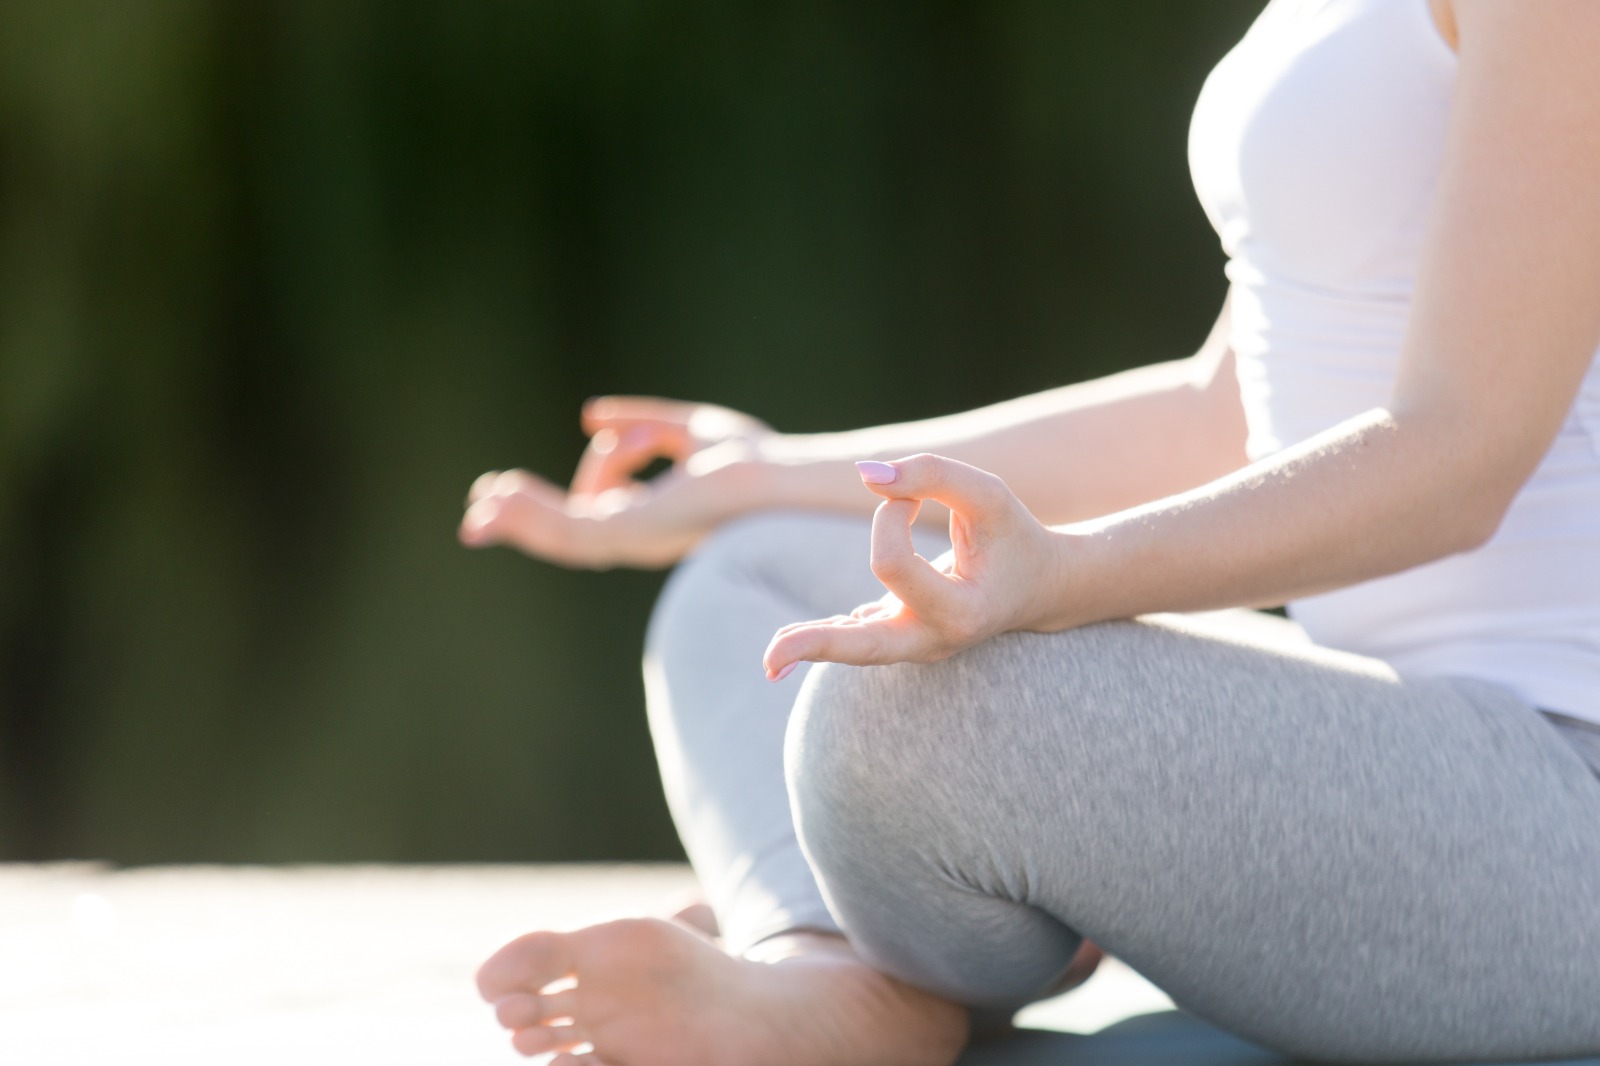 Taller sobre l’ús terapèutic del ioga a la vida diària en commemoració del Dia Internacional del Ioga